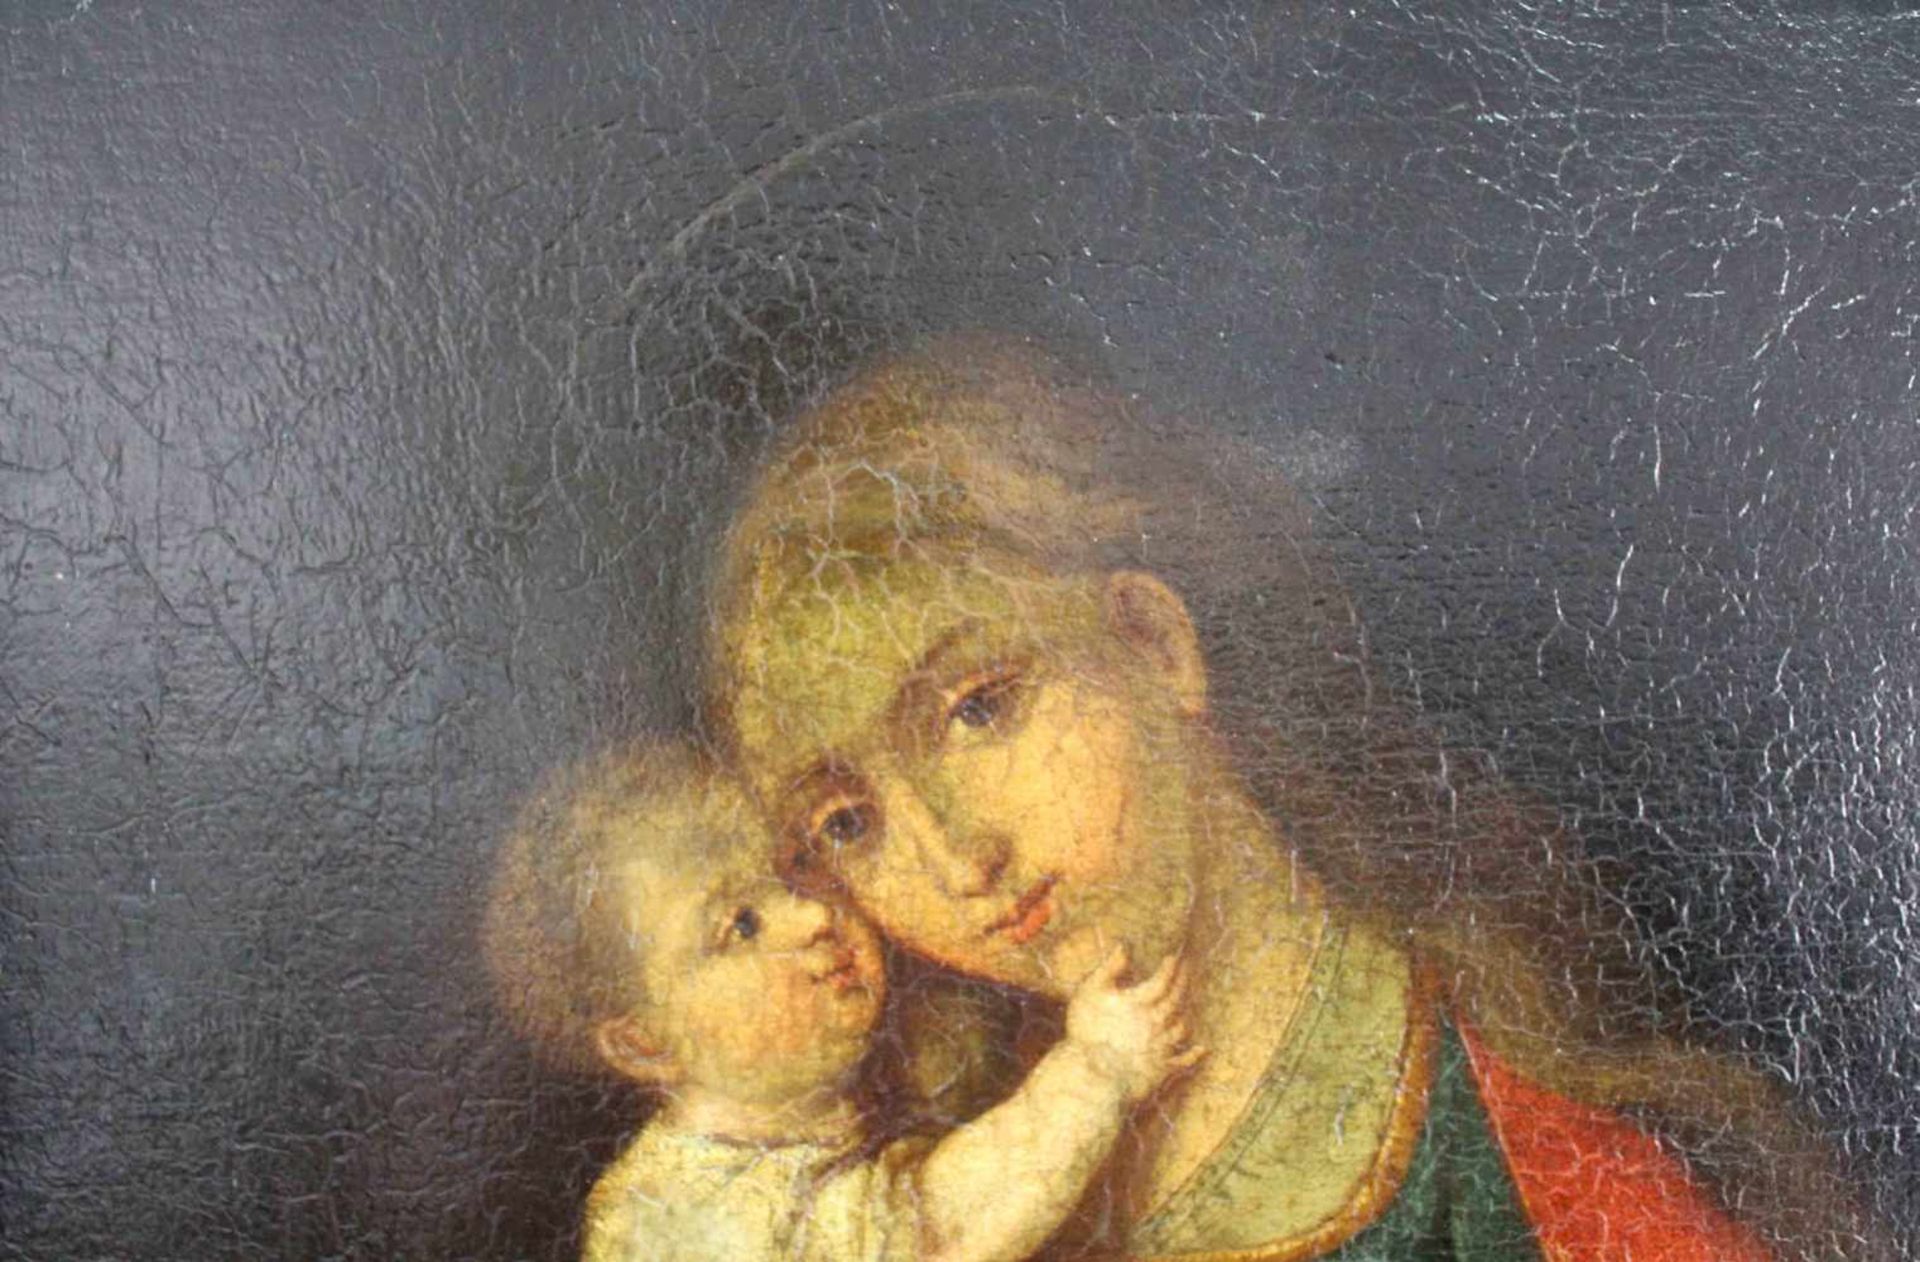 UNSIGNIERT (XVIII). Maria mit Jesus.66 cm x 54 cm. Öl auf Leinwand, u. a. doubliert. Keine - Bild 3 aus 7